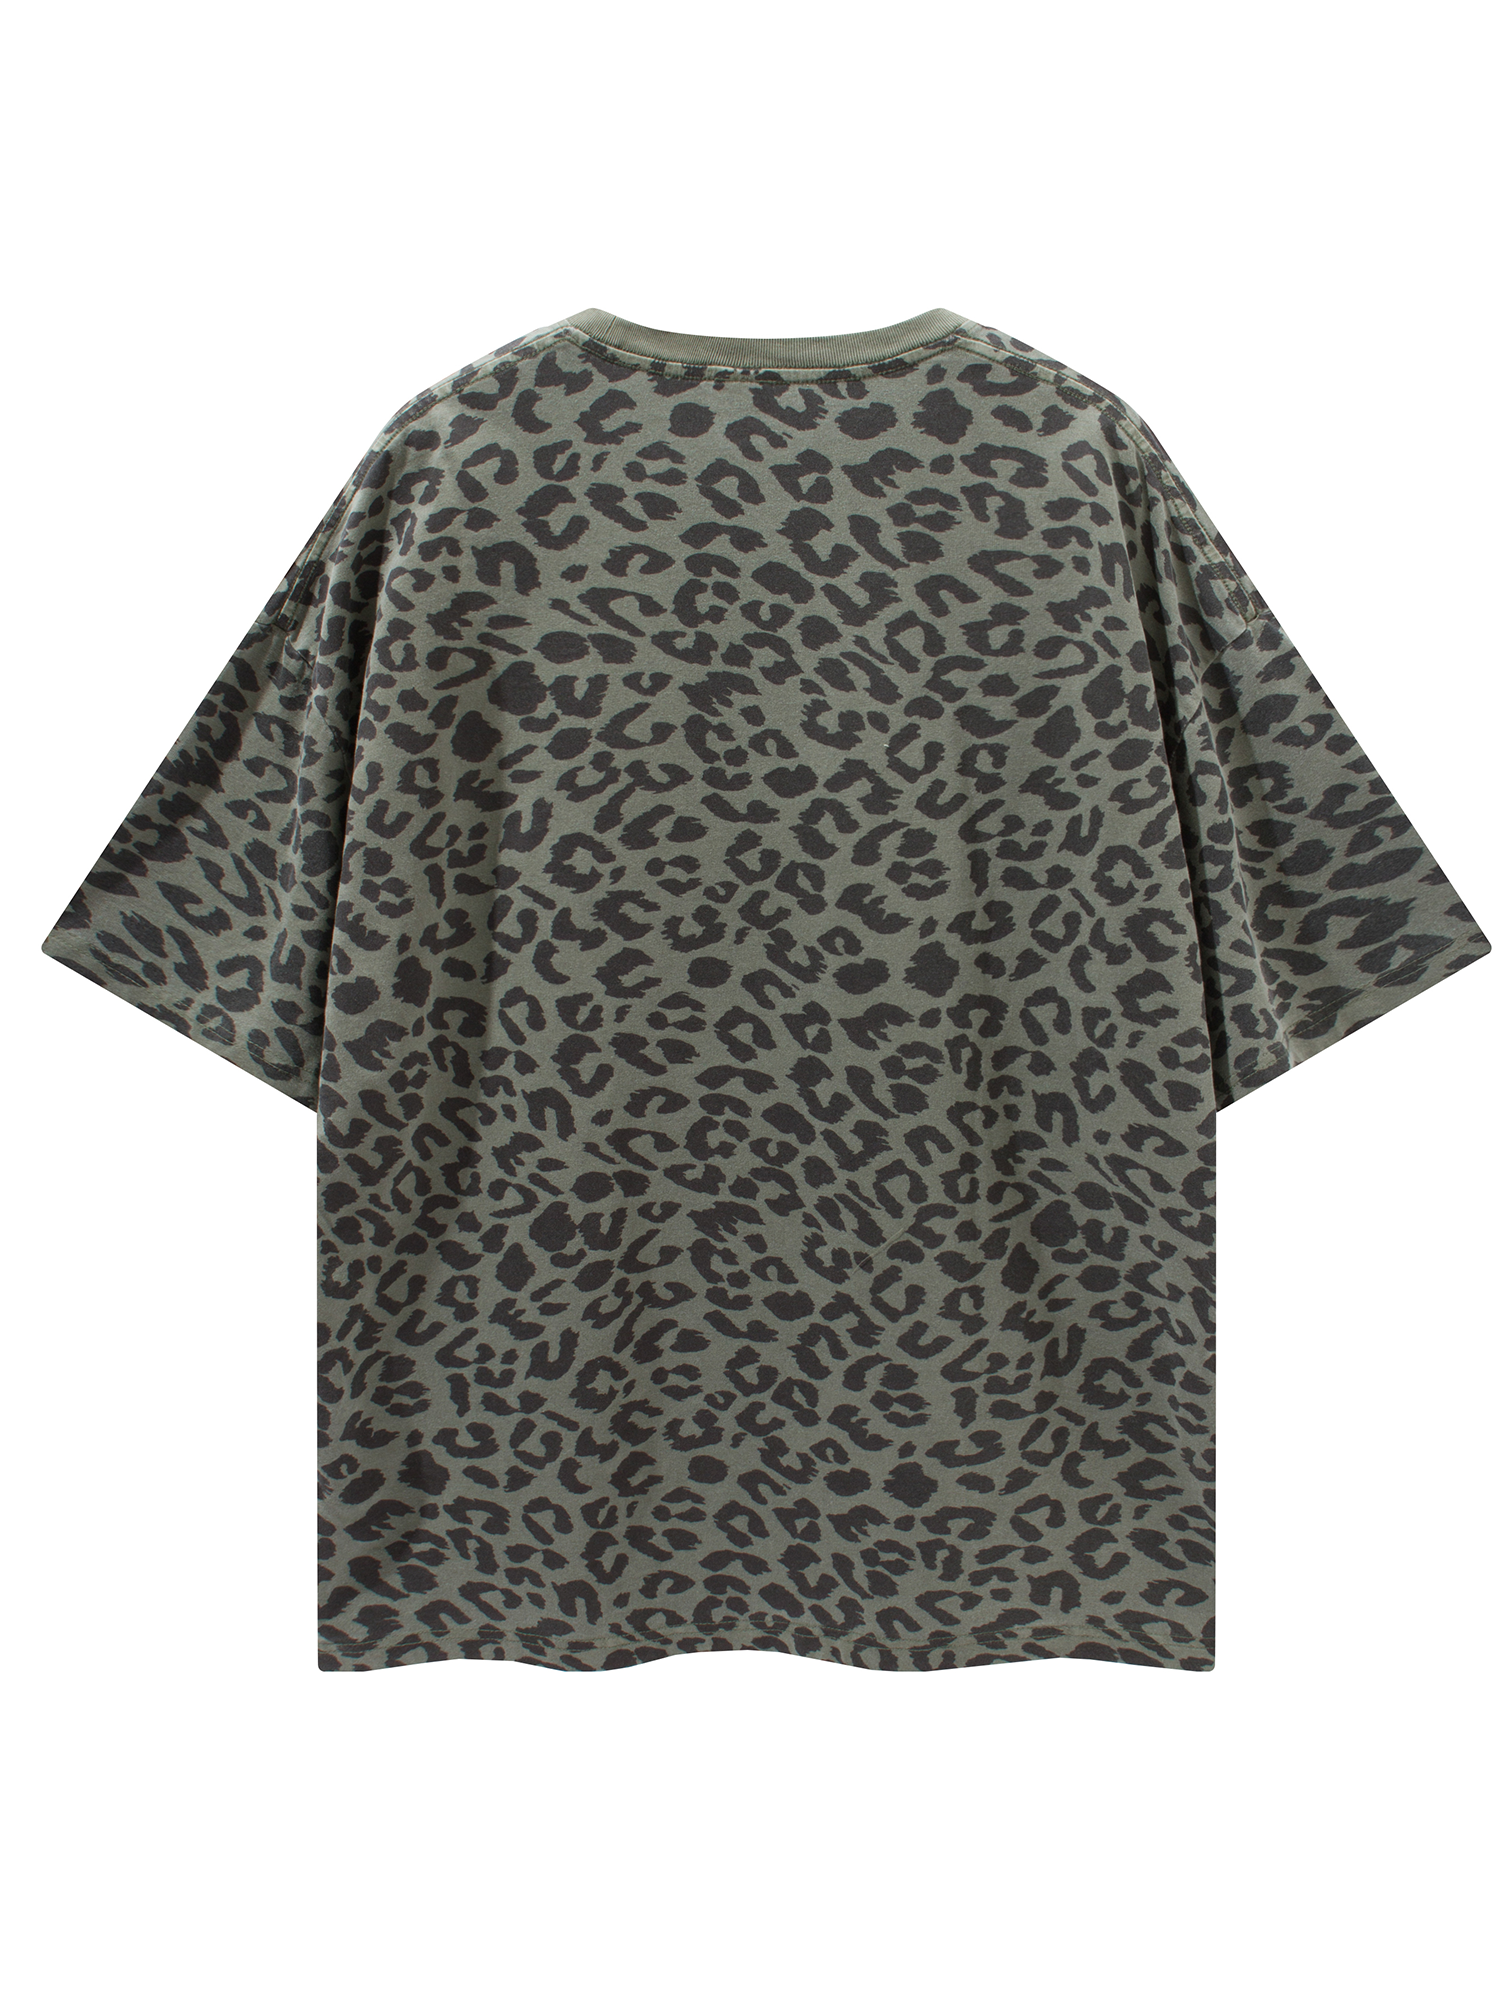 JUSTNOTAG Grünes Kurzarm-T-Shirt aus 100 % Baumwolle mit Leopardenmuster